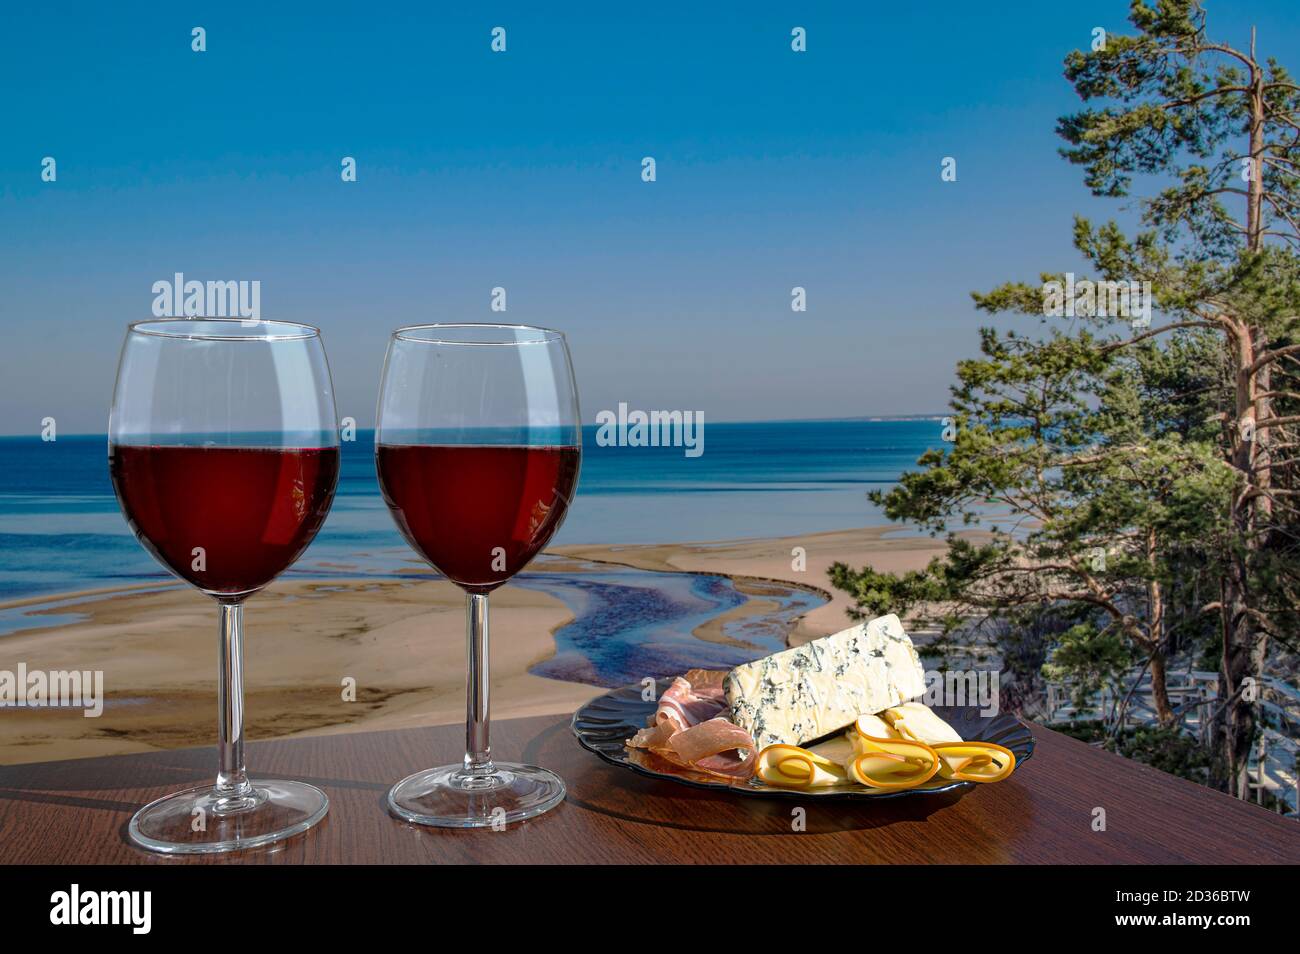 Due bicchieri di vino con assortimento di salumi contro la vista della spiaggia e Mar Baltico in primavera, Estonia. Spiaggia con sabbia bianca e mare blu/oceano. Foto Stock